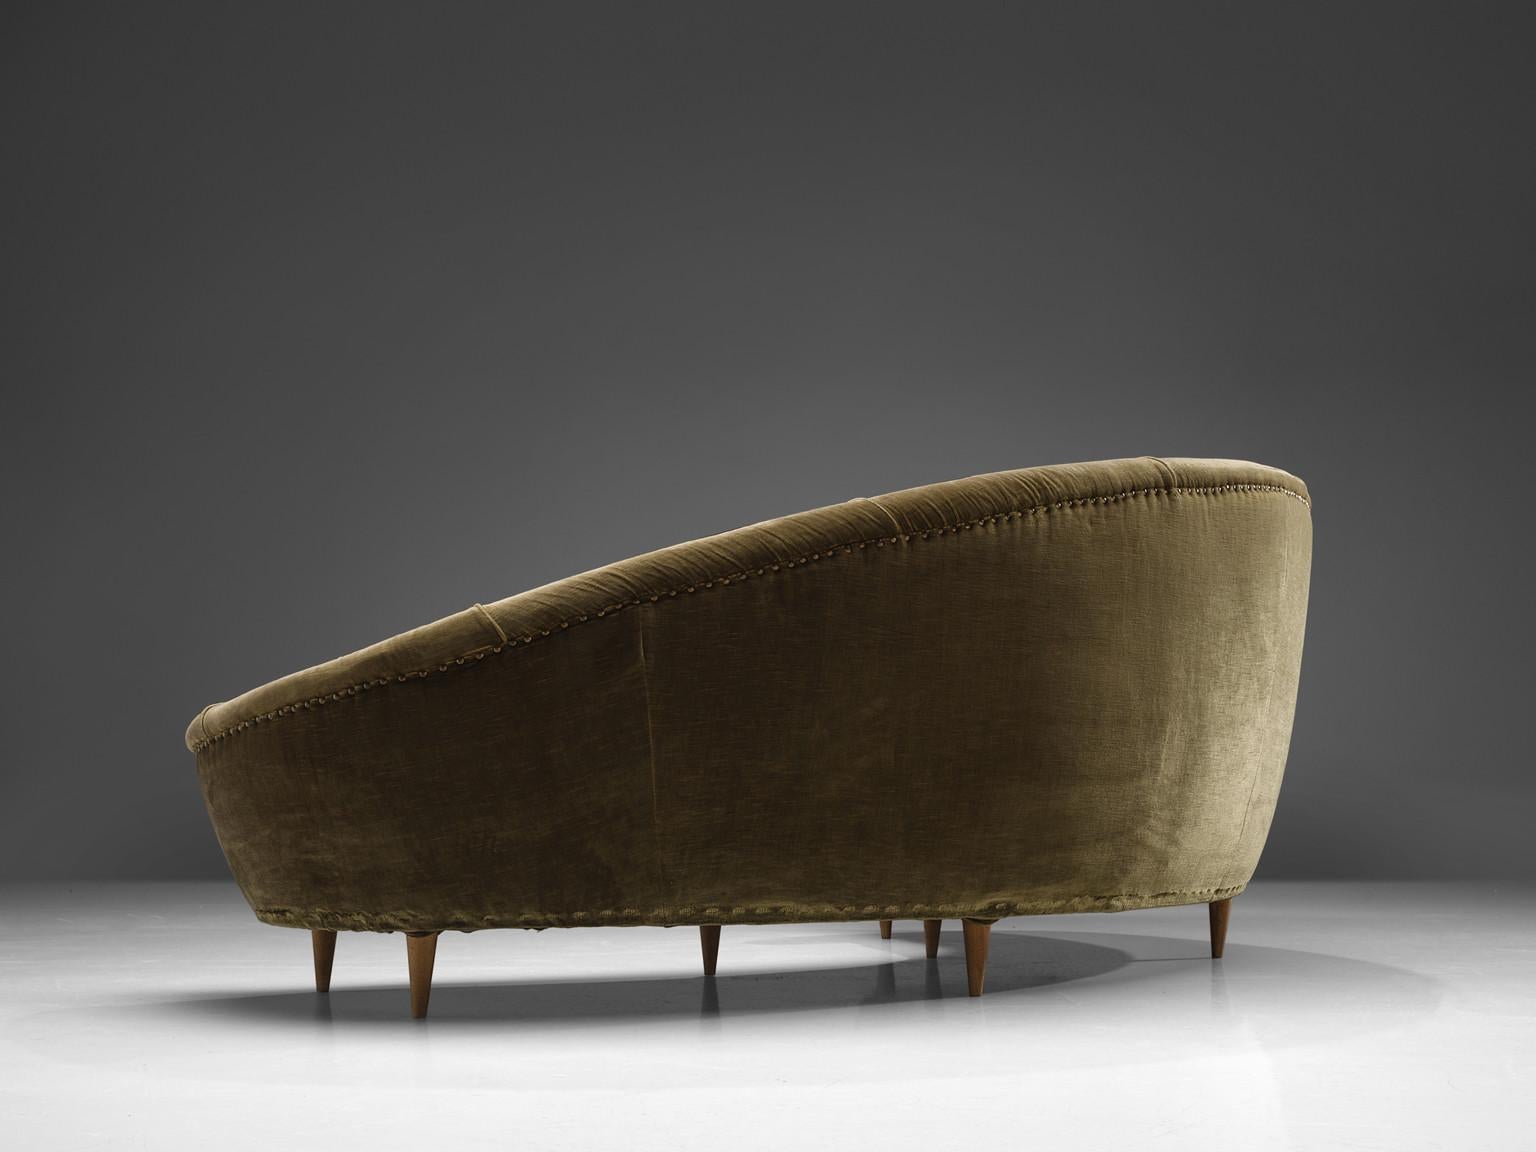 Italienisches Sofa, Samt, Buche Italien, 1950er Jahre

Dieses dynamische italienische Sofa weist starke Ähnlichkeiten mit den Entwürfen von Federico Munari auf. Der Korpus weist einen a-symmetrischen Rücken auf, der auf der linken Seite höher ist